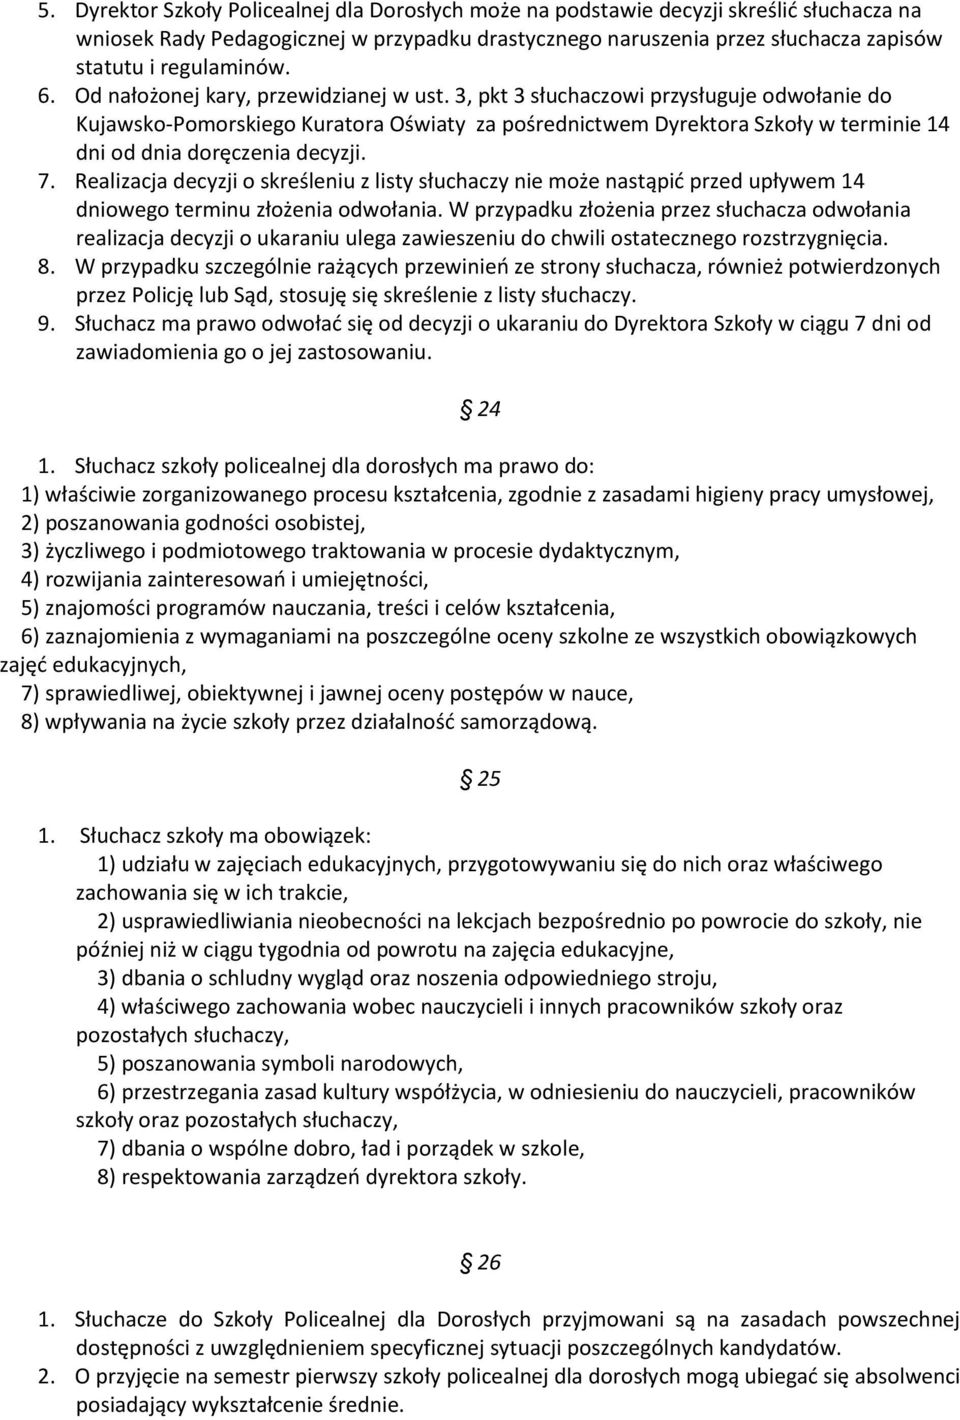 3, pkt 3 słuchaczowi przysługuje odwołanie do Kujawsko-Pomorskiego Kuratora Oświaty za pośrednictwem Dyrektora Szkoły w terminie 14 dni od dnia doręczenia decyzji. 7.